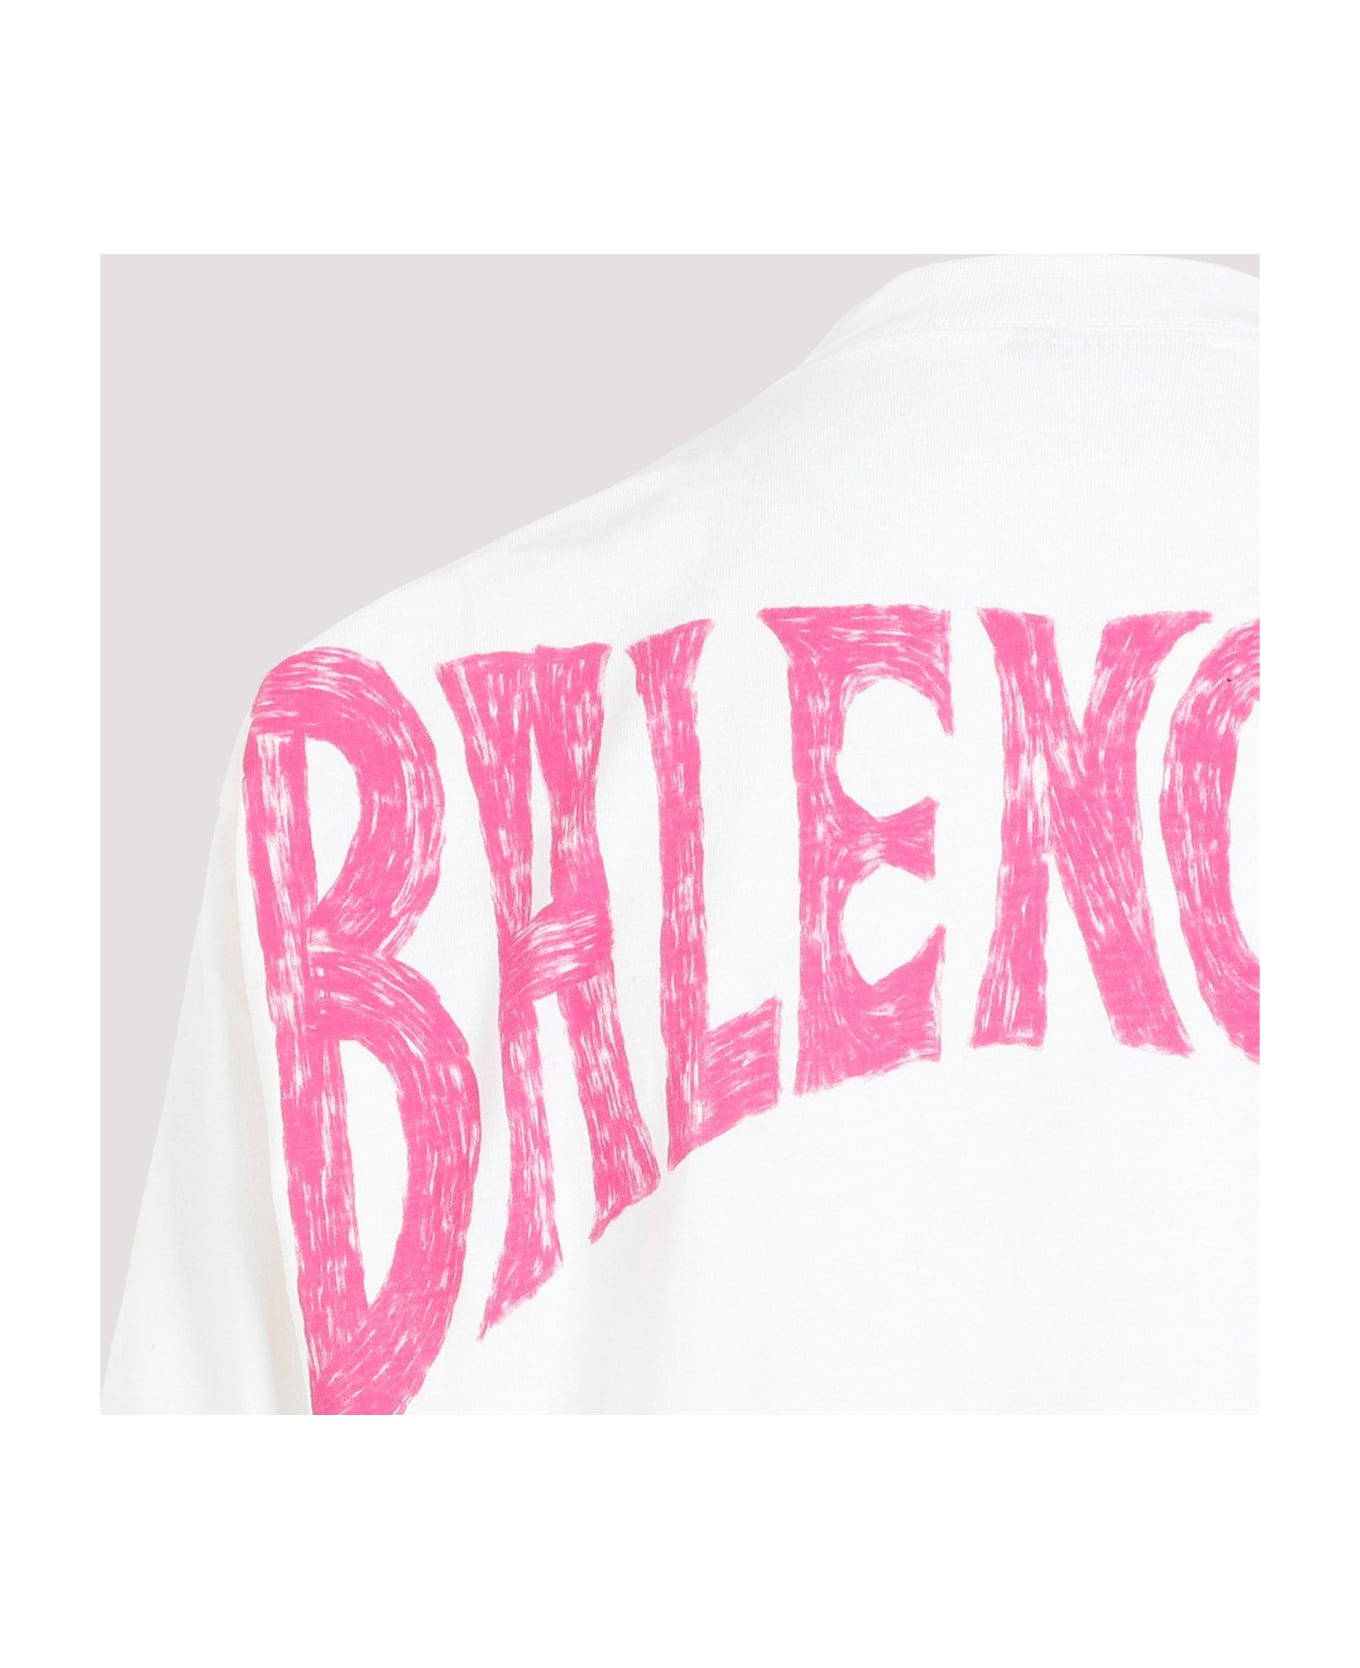 Balenciaga Logo Printed Long-sleeved Shirt - WHITE シャツ